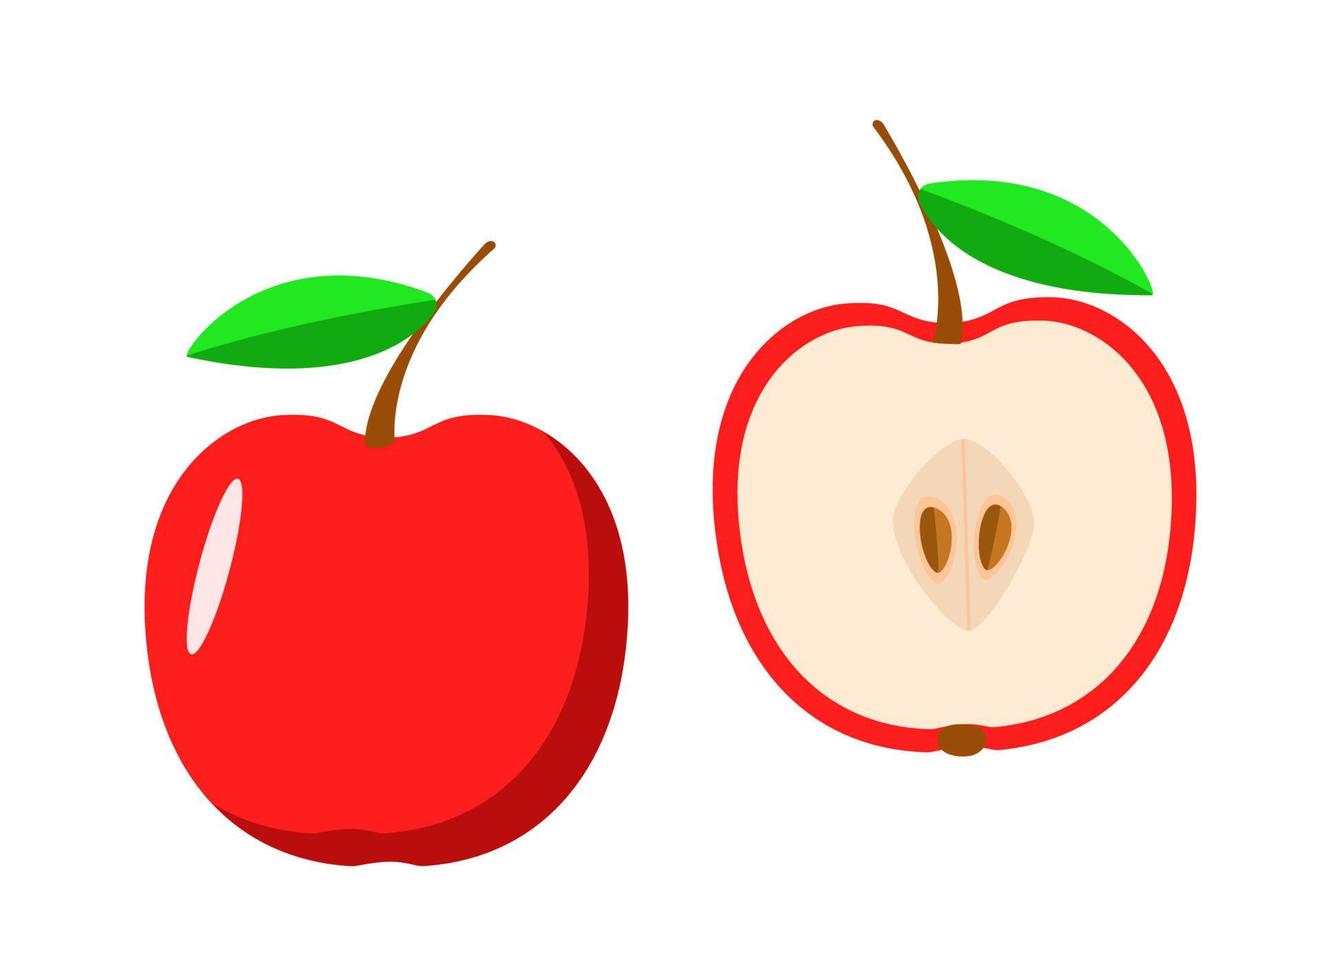 maçã vermelha fresca e meia maçã, ilustração vetorial de frutas maduras vetor